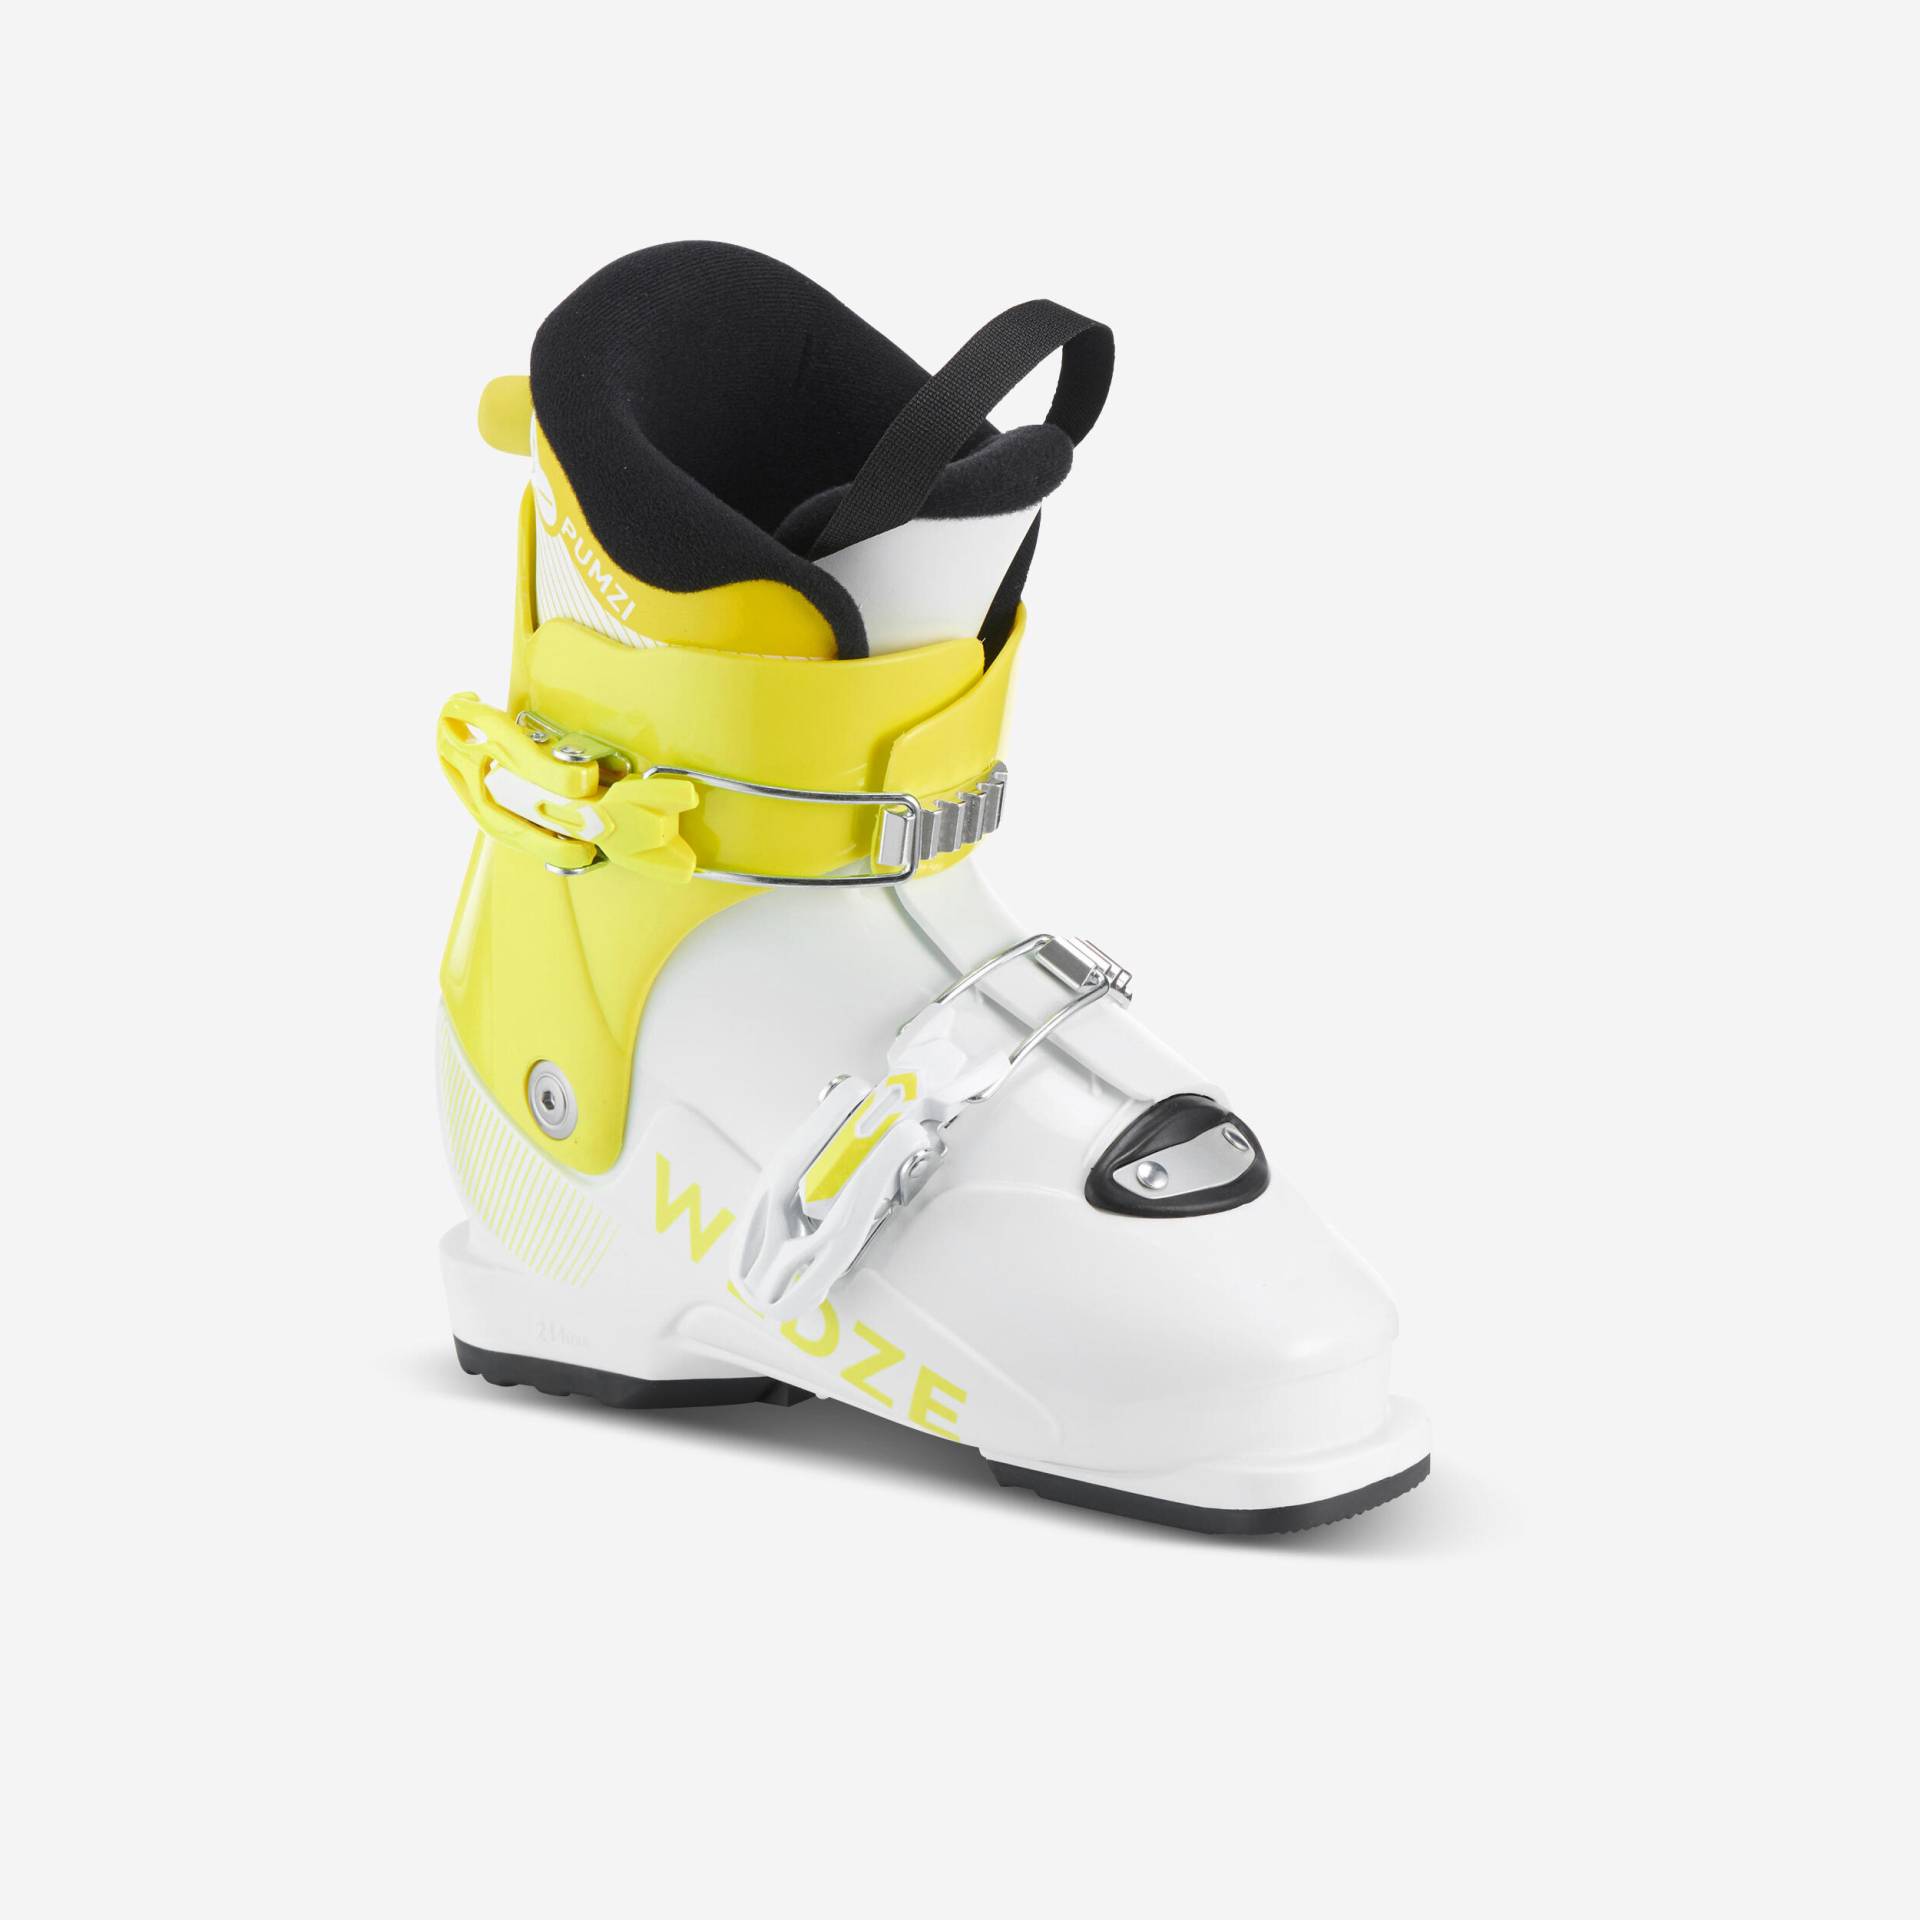 Skischuhe Kinder - Pumzi 500 gelb von WEDZE